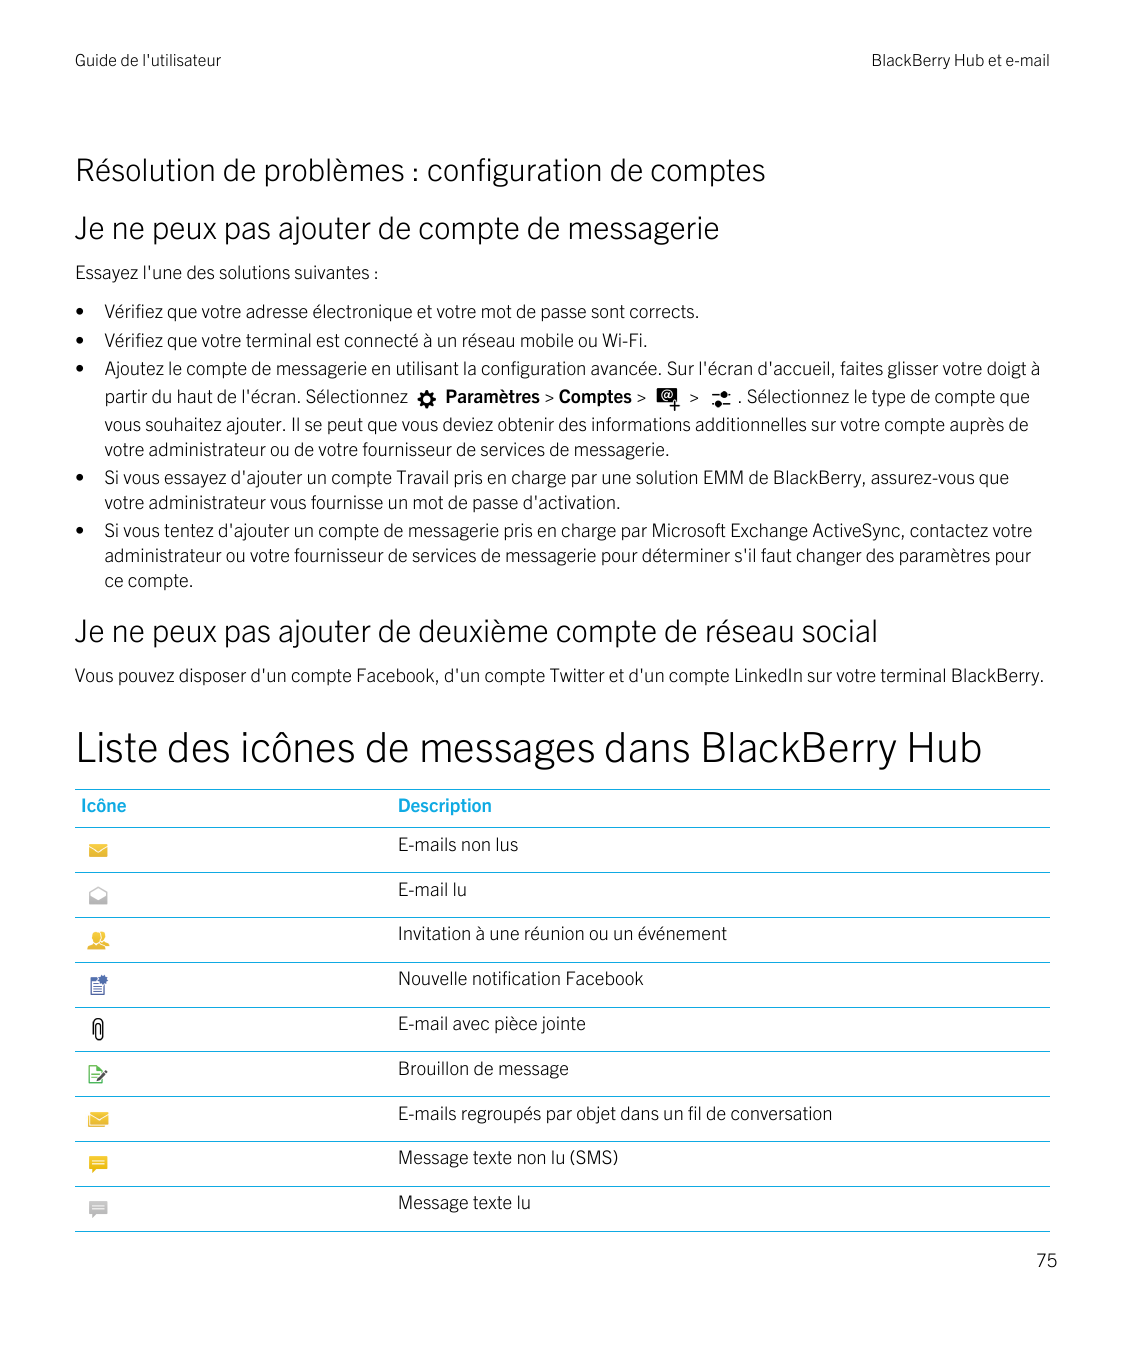 Guide de l'utilisateurBlackBerry Hub et e-mailRésolution de problèmes : configuration de comptesJe ne peux pas ajouter de compte